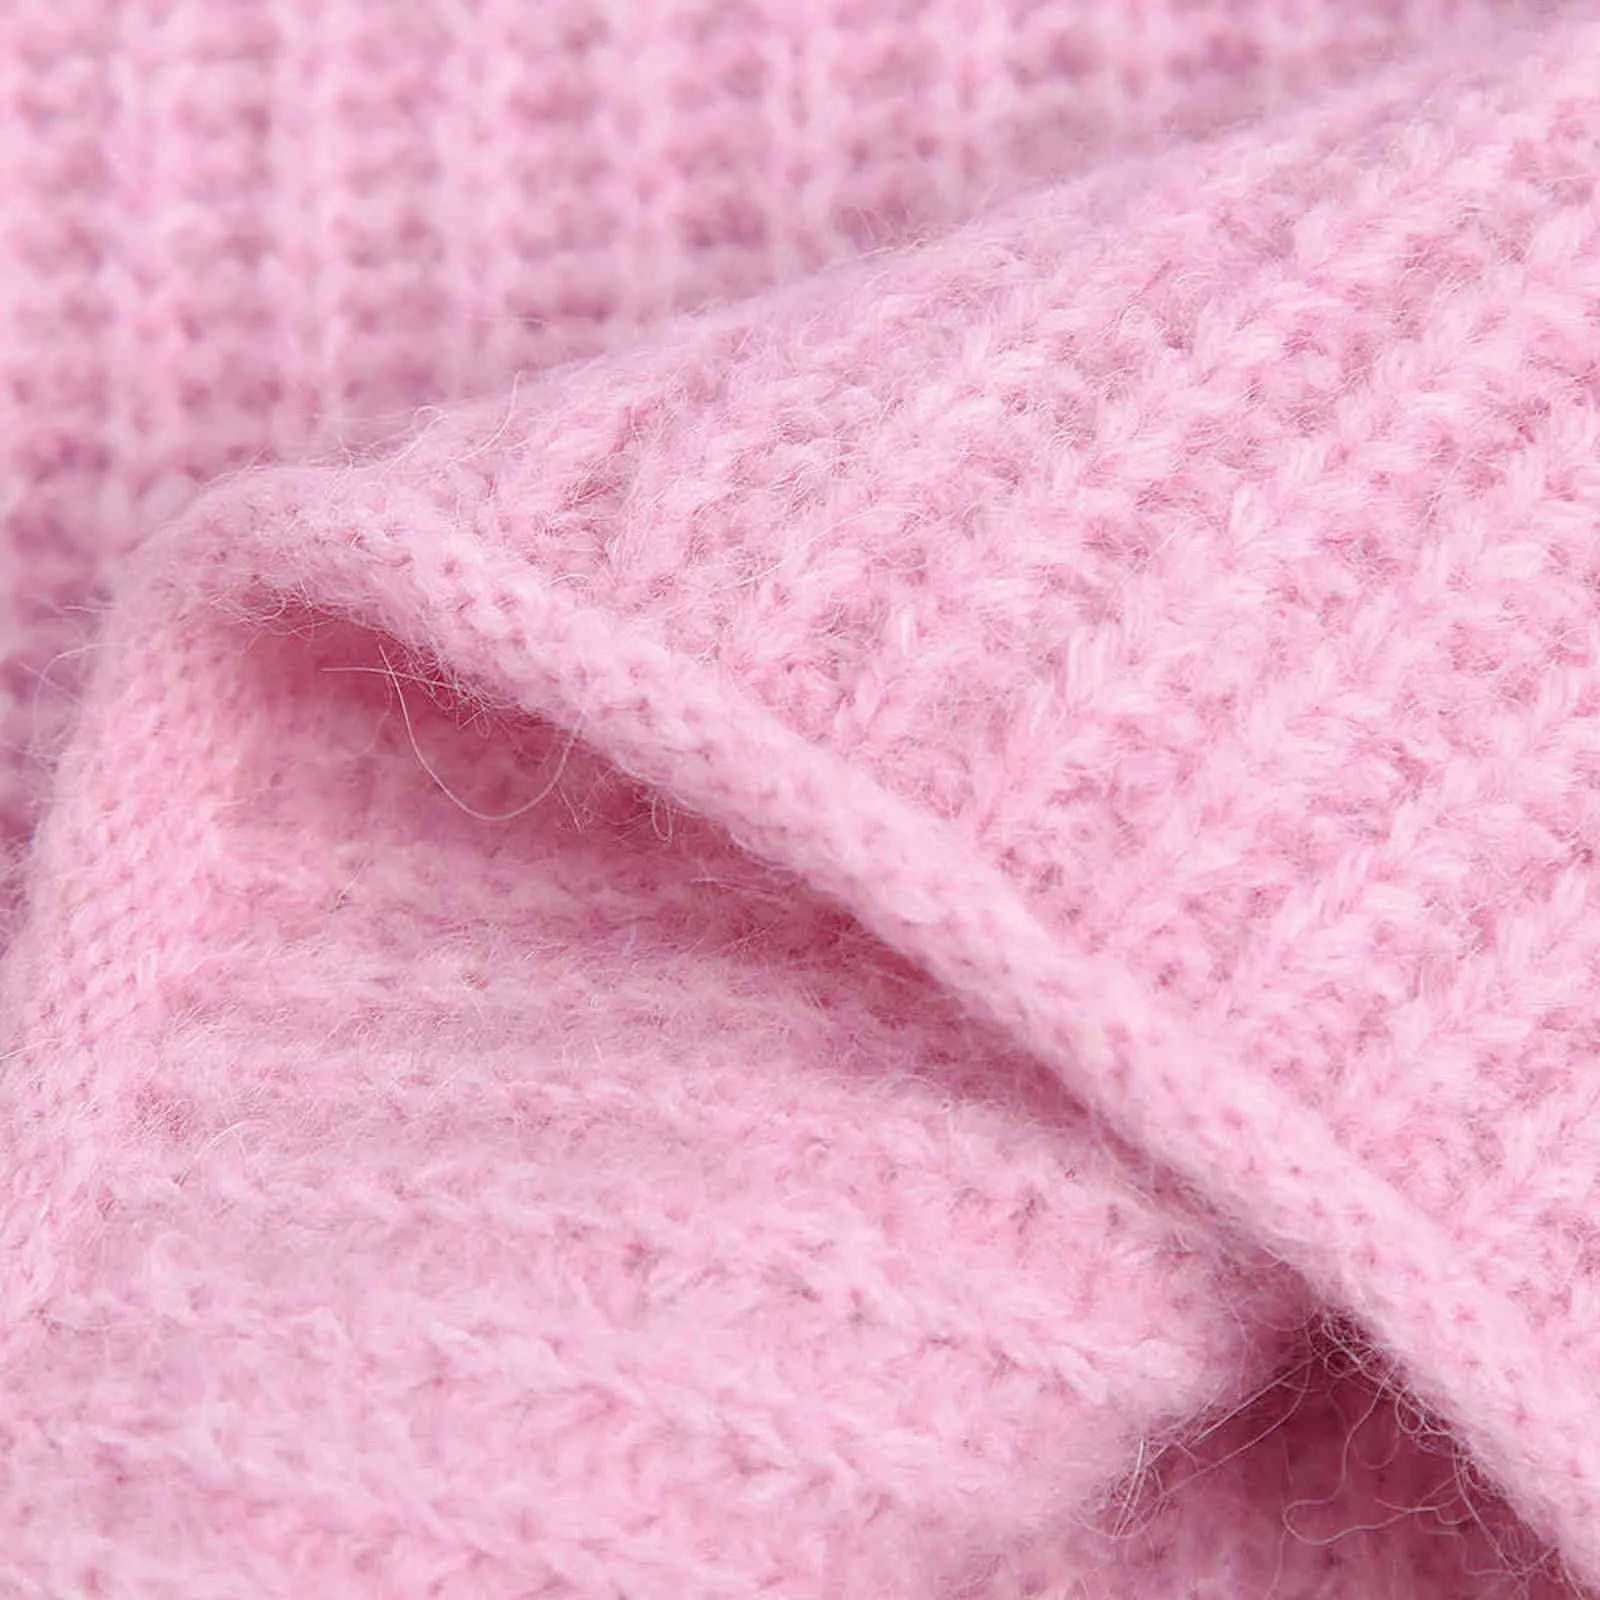 BLSQR Розовые Элегантные свитера Женщины О-Шеи Винтаж Шикарные Пуловер Топы Женщина Streetwear Повседневная Урожай Офис Леди Y1110